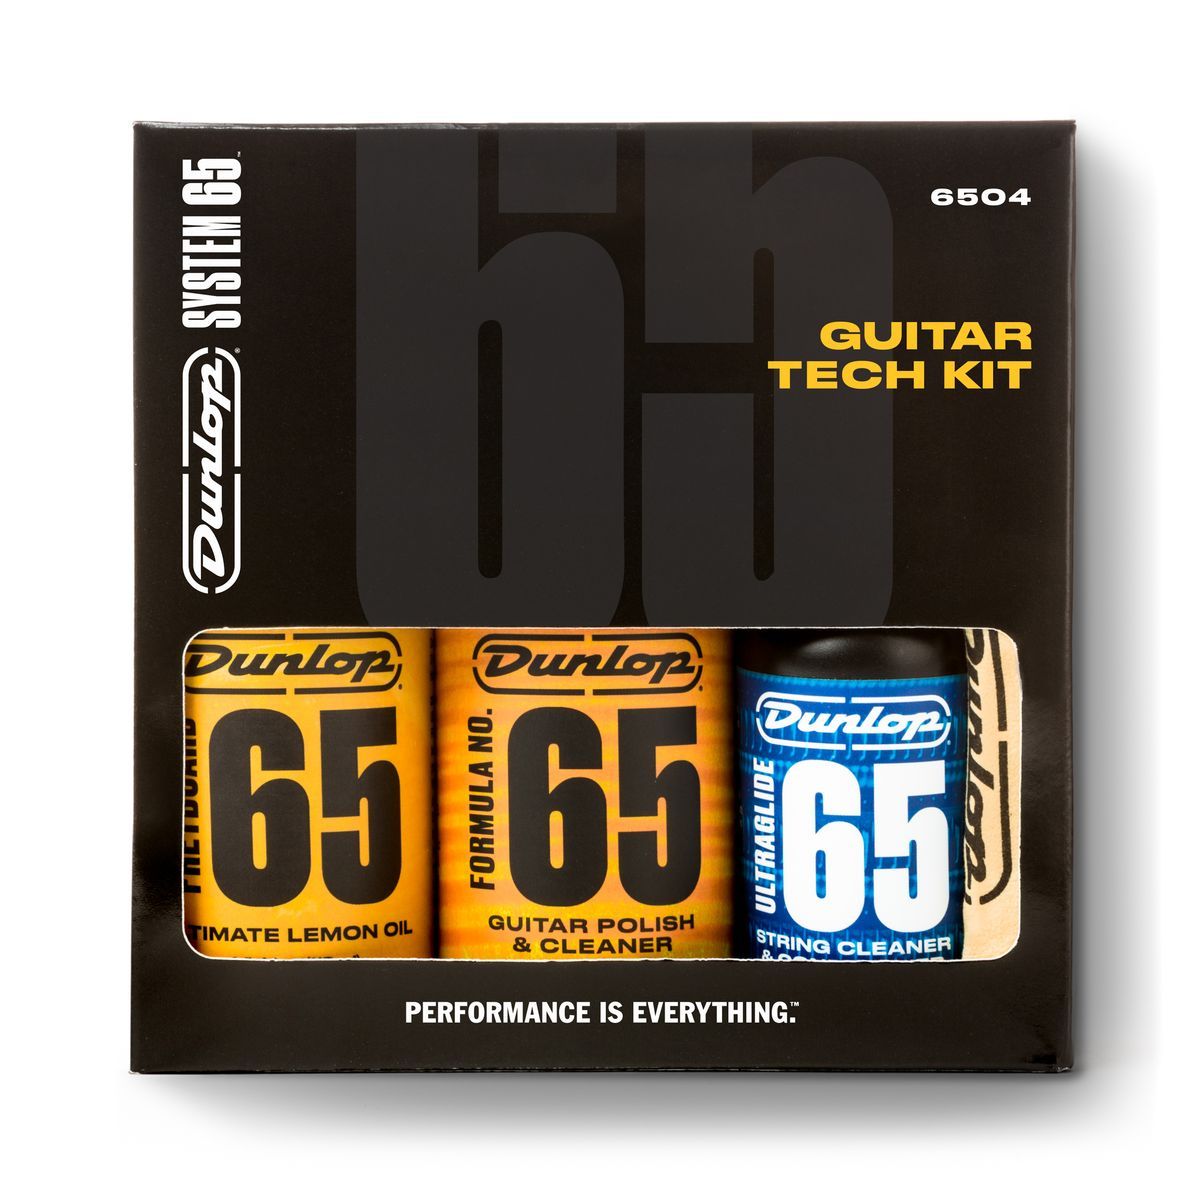 Прочие гитарные аксессуары Dunlop 6504 System 65 Guitar Tech Kit сборник 100 best guitar classics 6cd